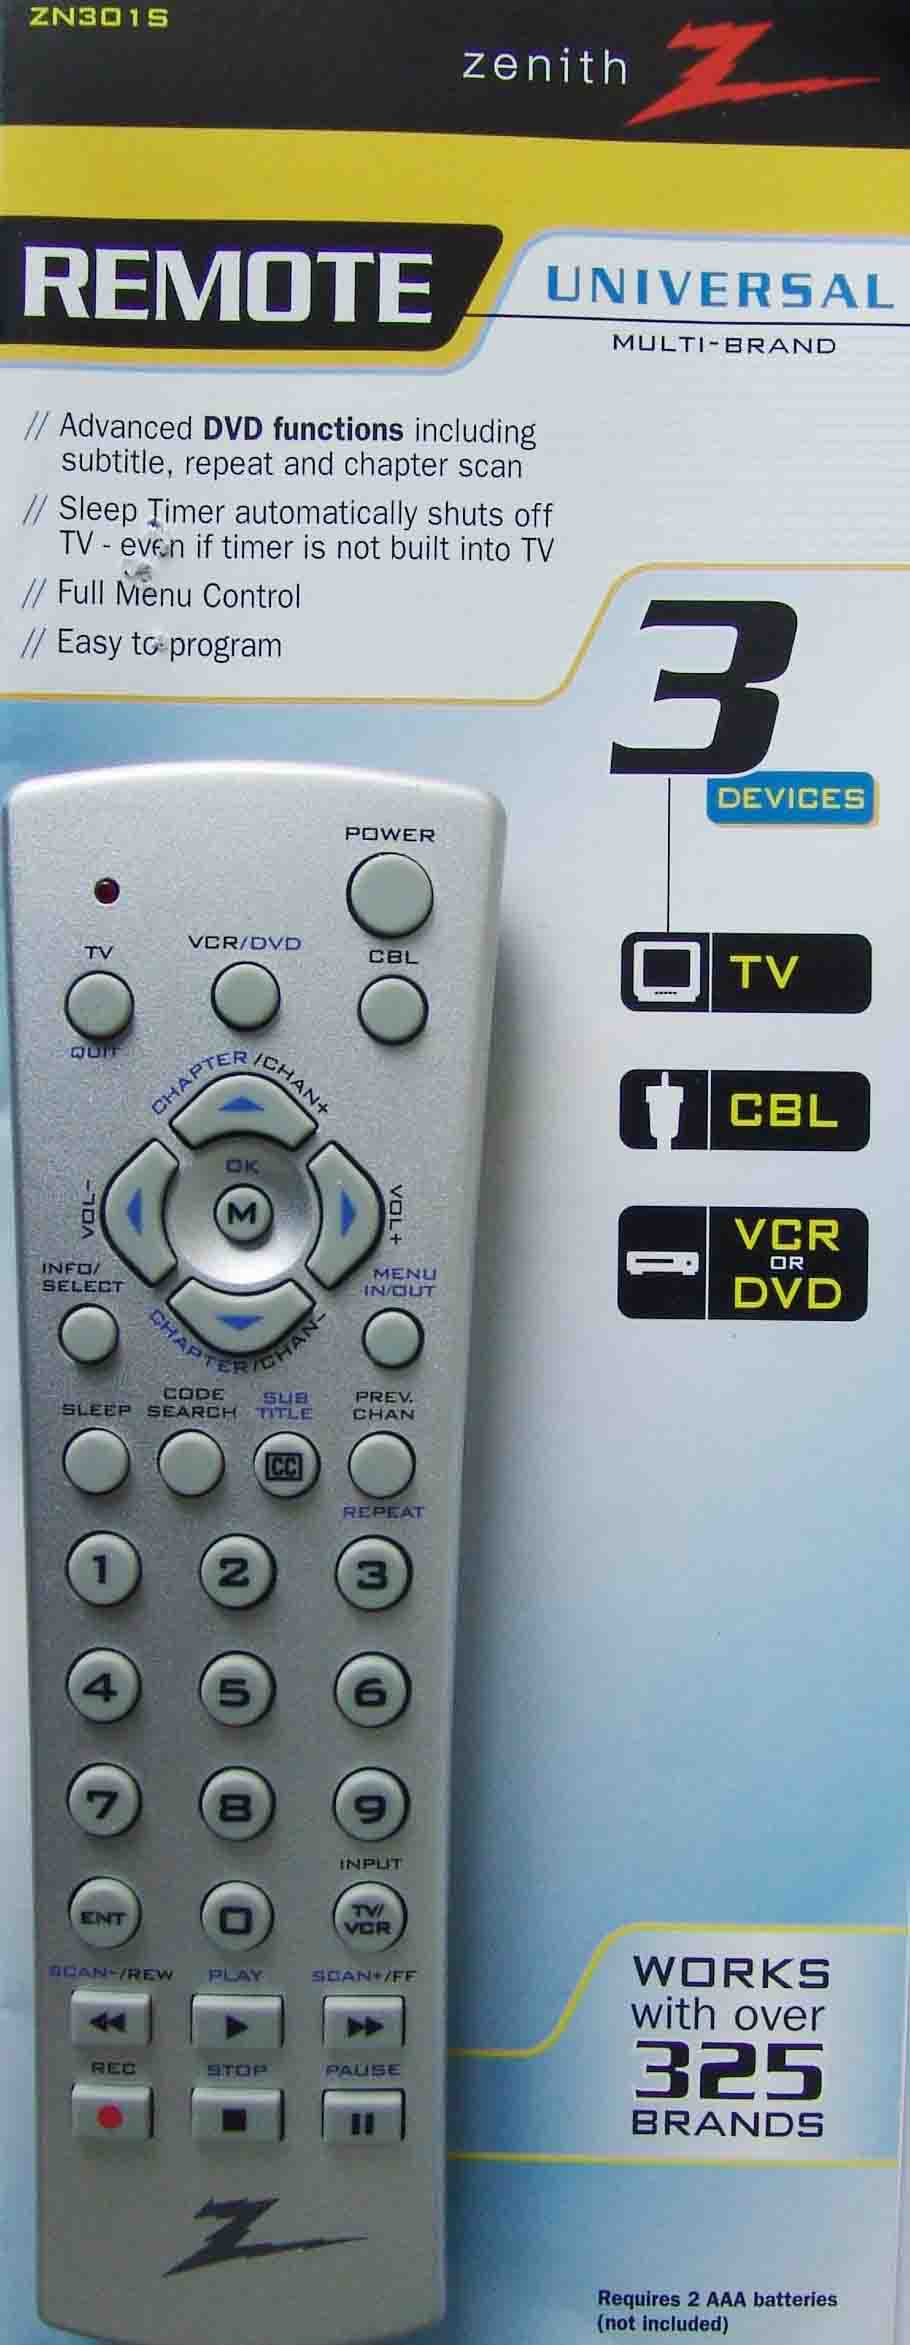  Remote Control ( Remote Control)